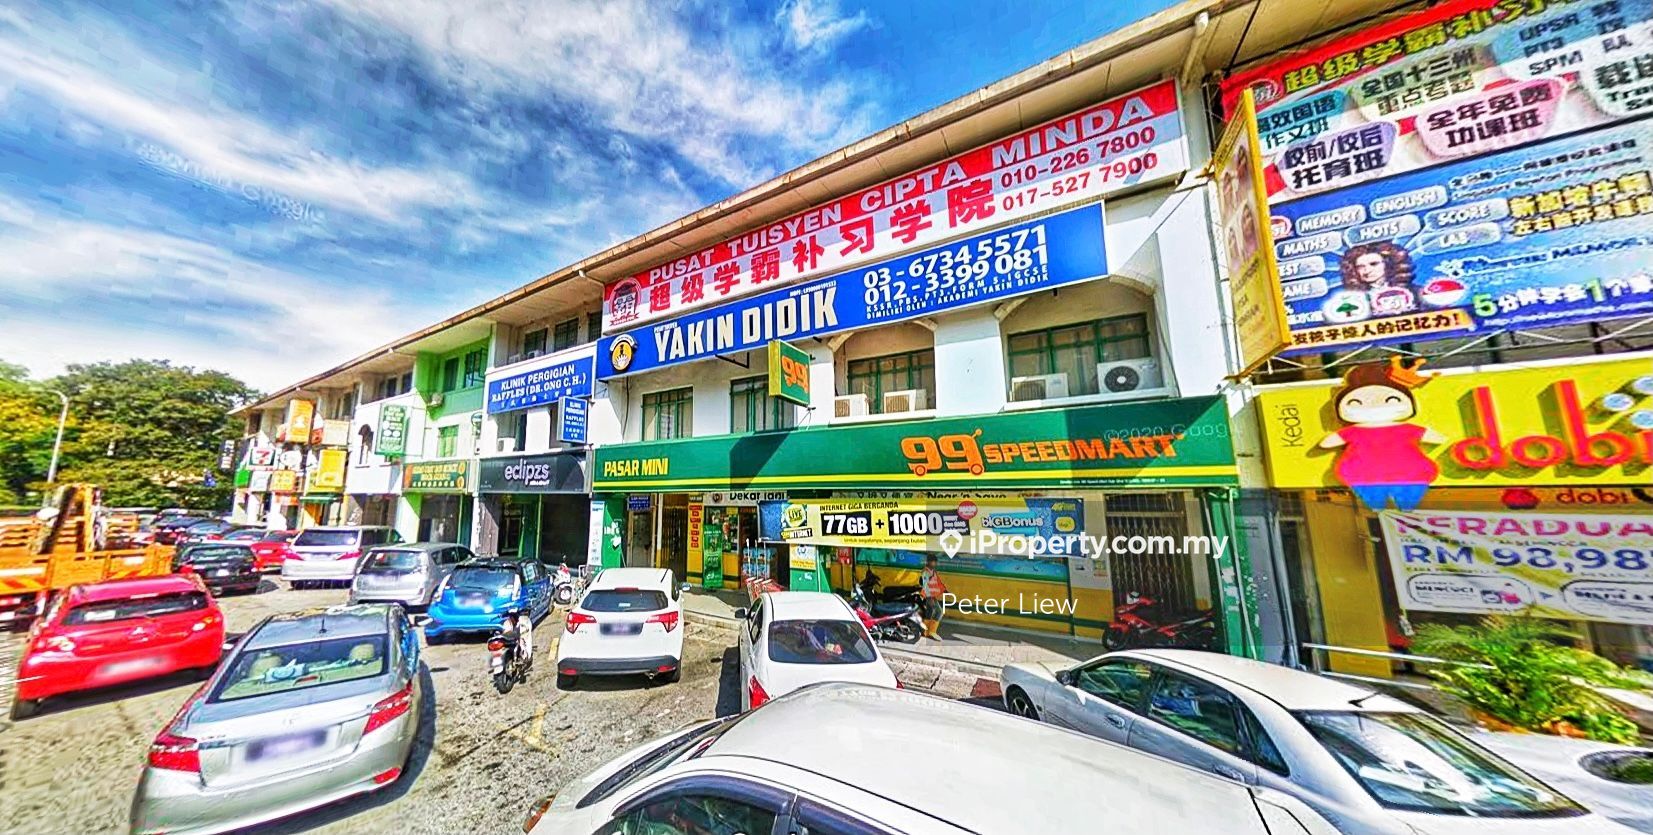 Facing Main Road 3 Storey Shop lot at SD12, Bandar Sri Damansara, SD 12, Kepong, Damansara, Bandar Sri Damansara, Selangor, Bandar Sri Damansara